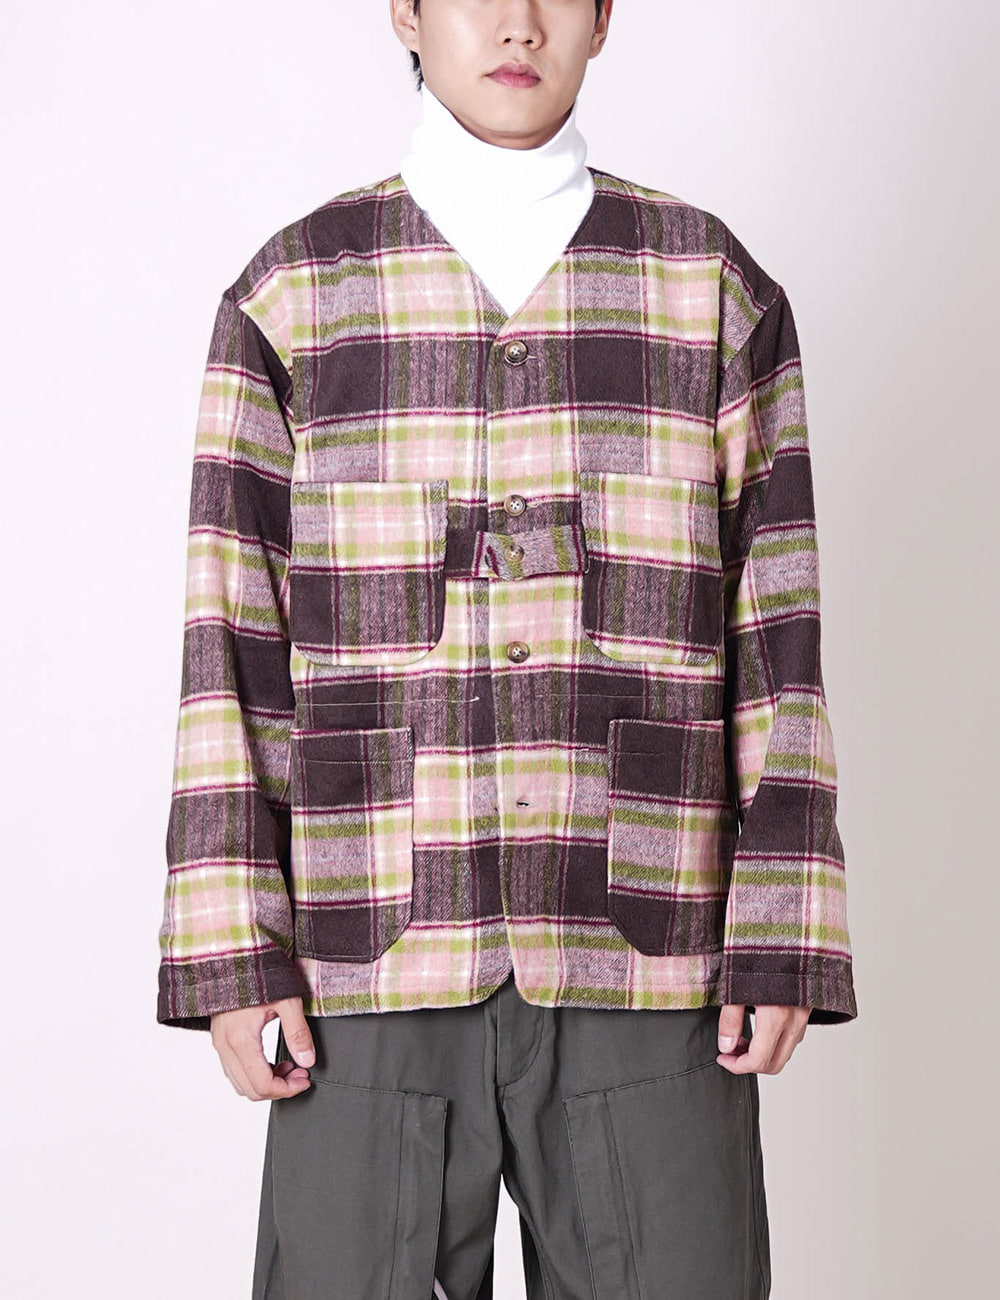 Engineered Garments : Cardigan Jacket (Brown/Pink Poly Wool Plaid)